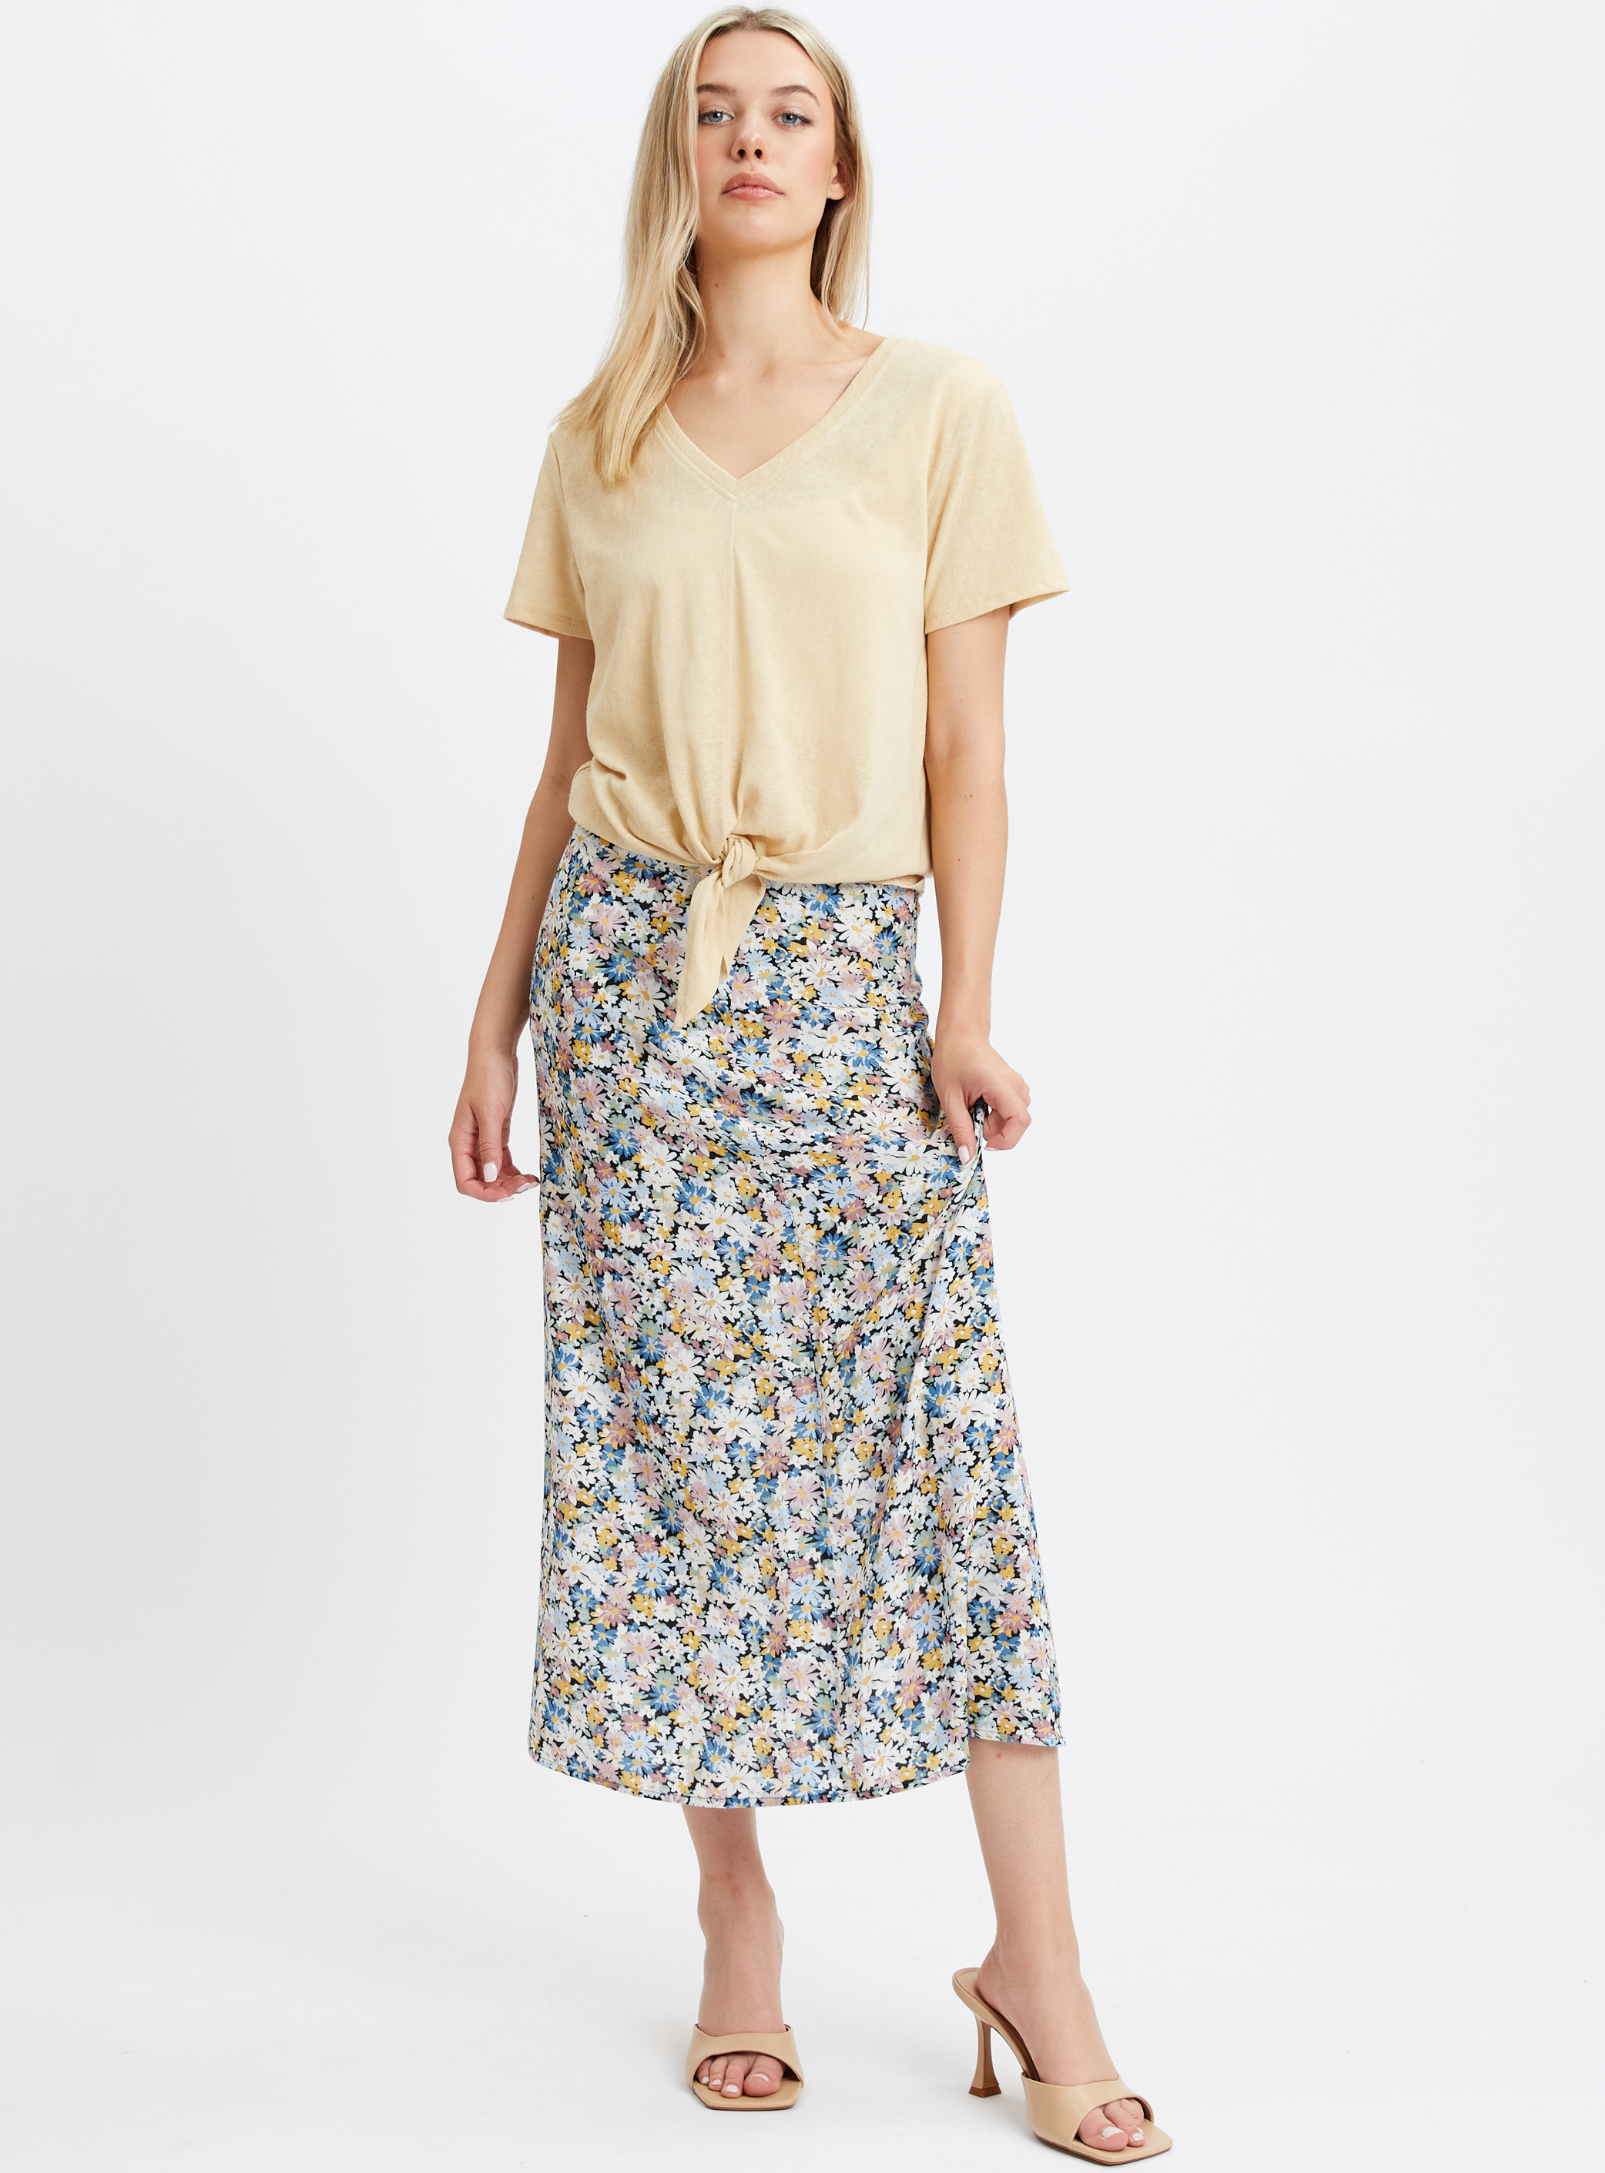 SASHA | Long floral printed skirt with slit